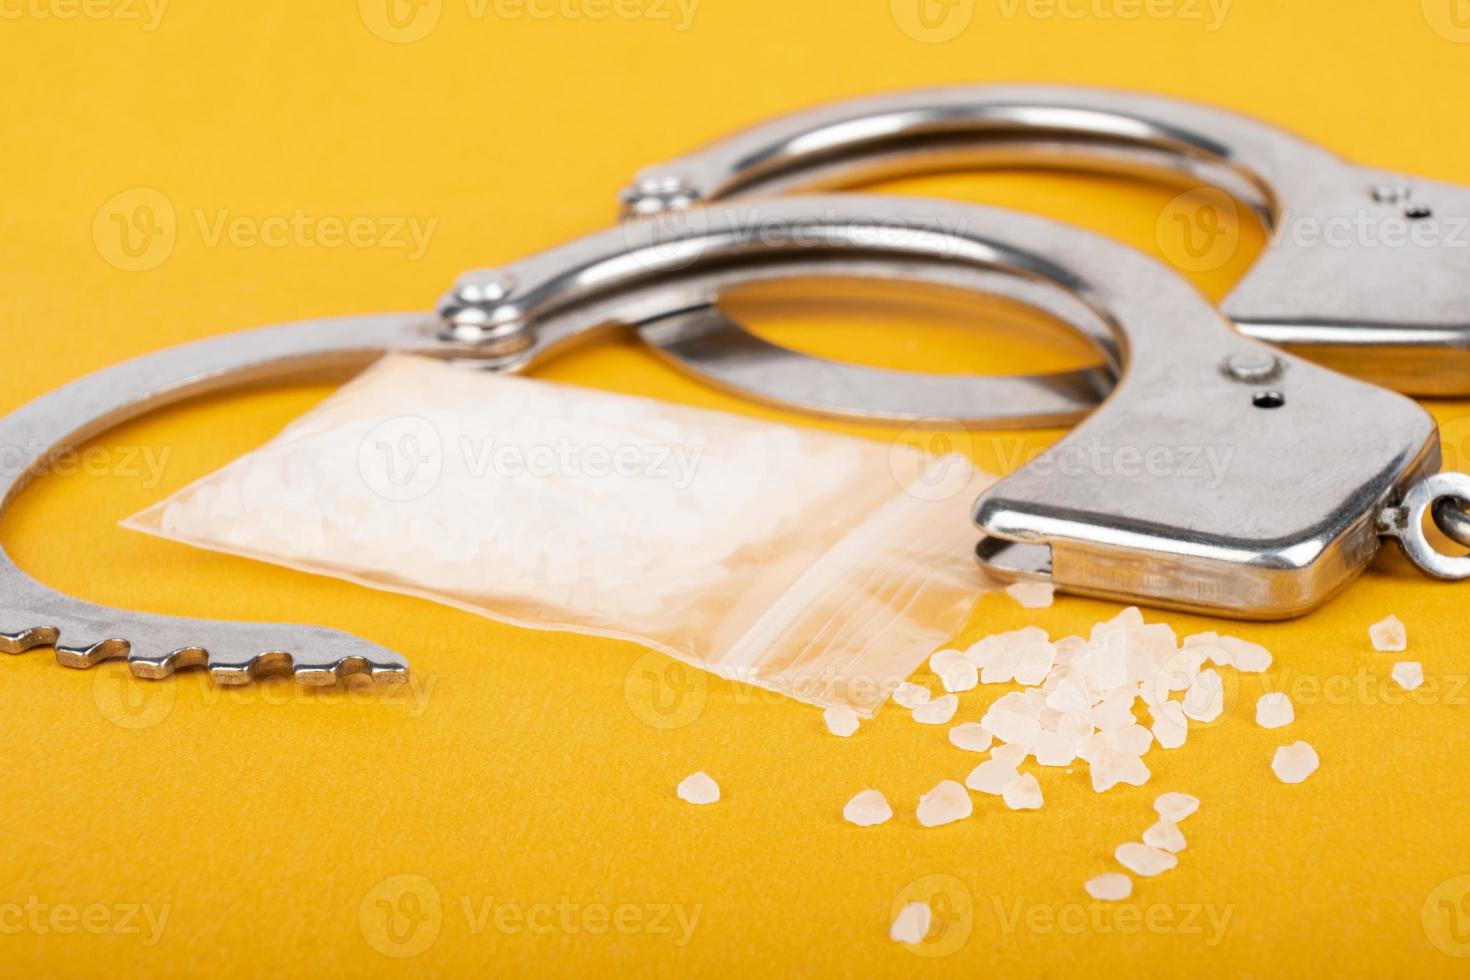 menottes et cristaux de drogue, arrestation d'un trafiquant de drogue photo